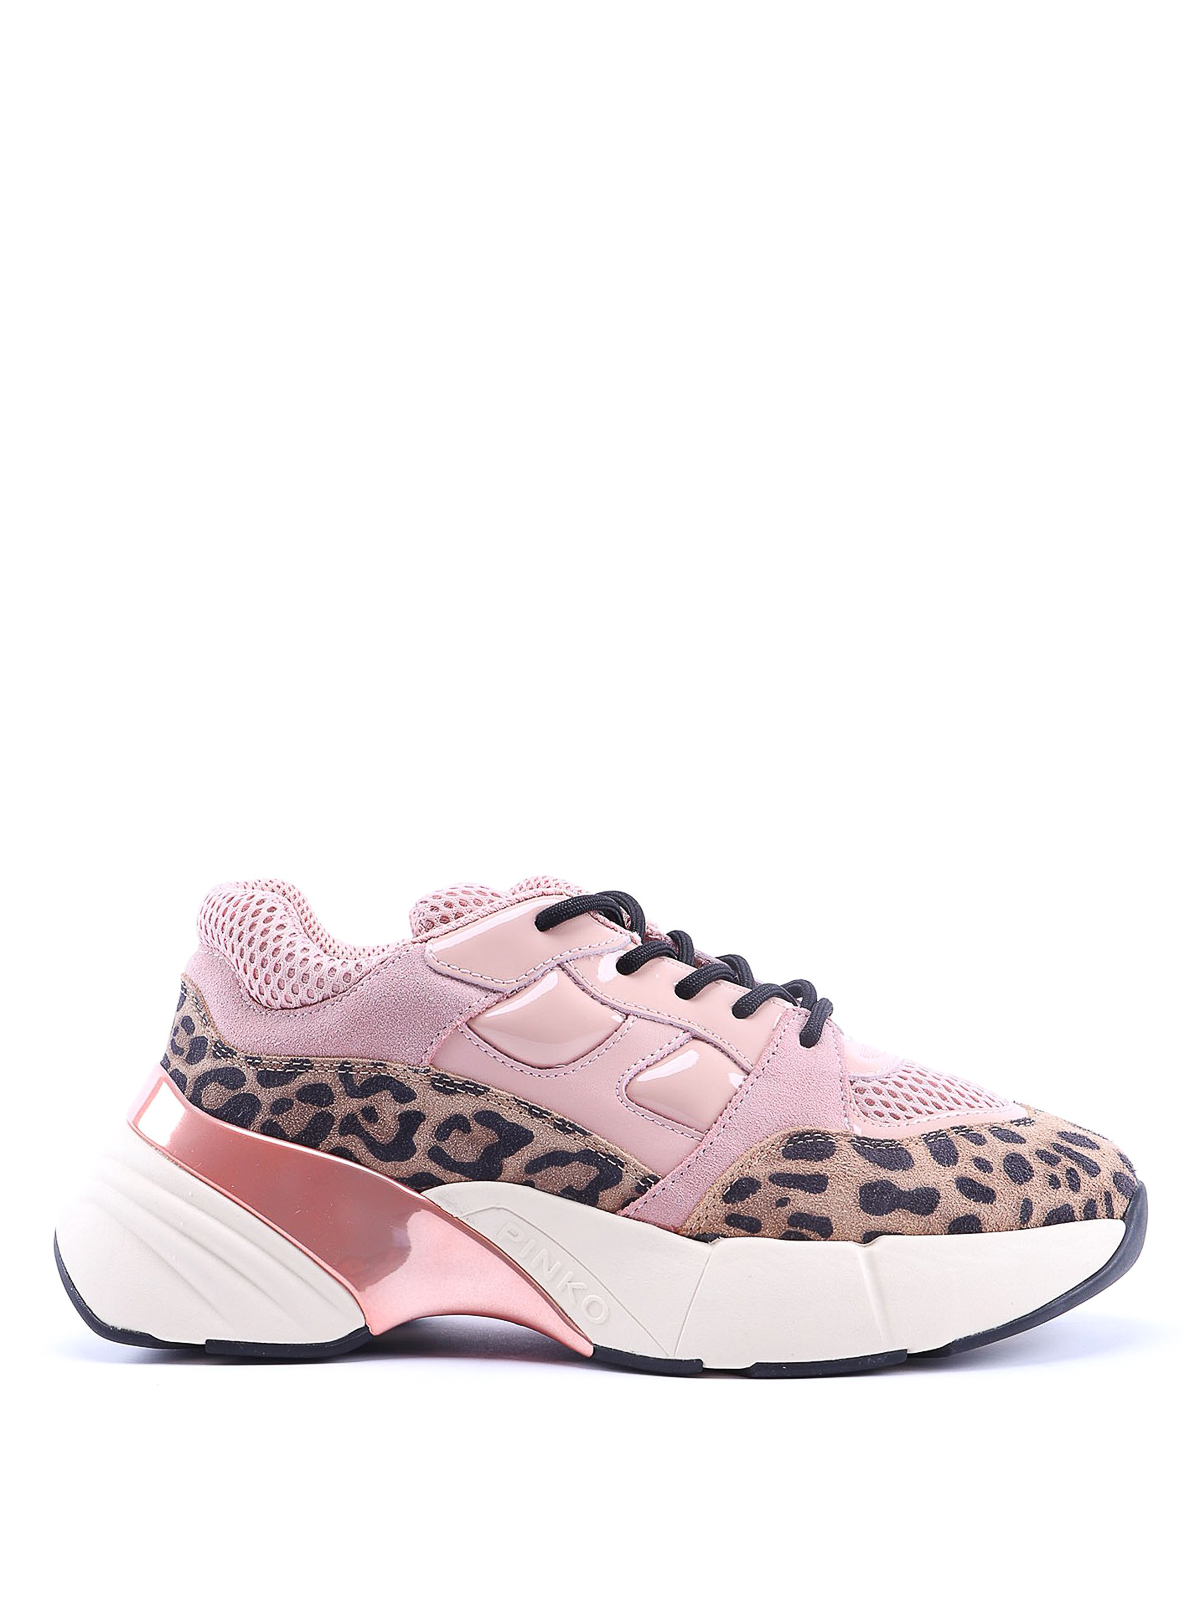 Pinko Rubino Safari Pink And Leo Sneakers